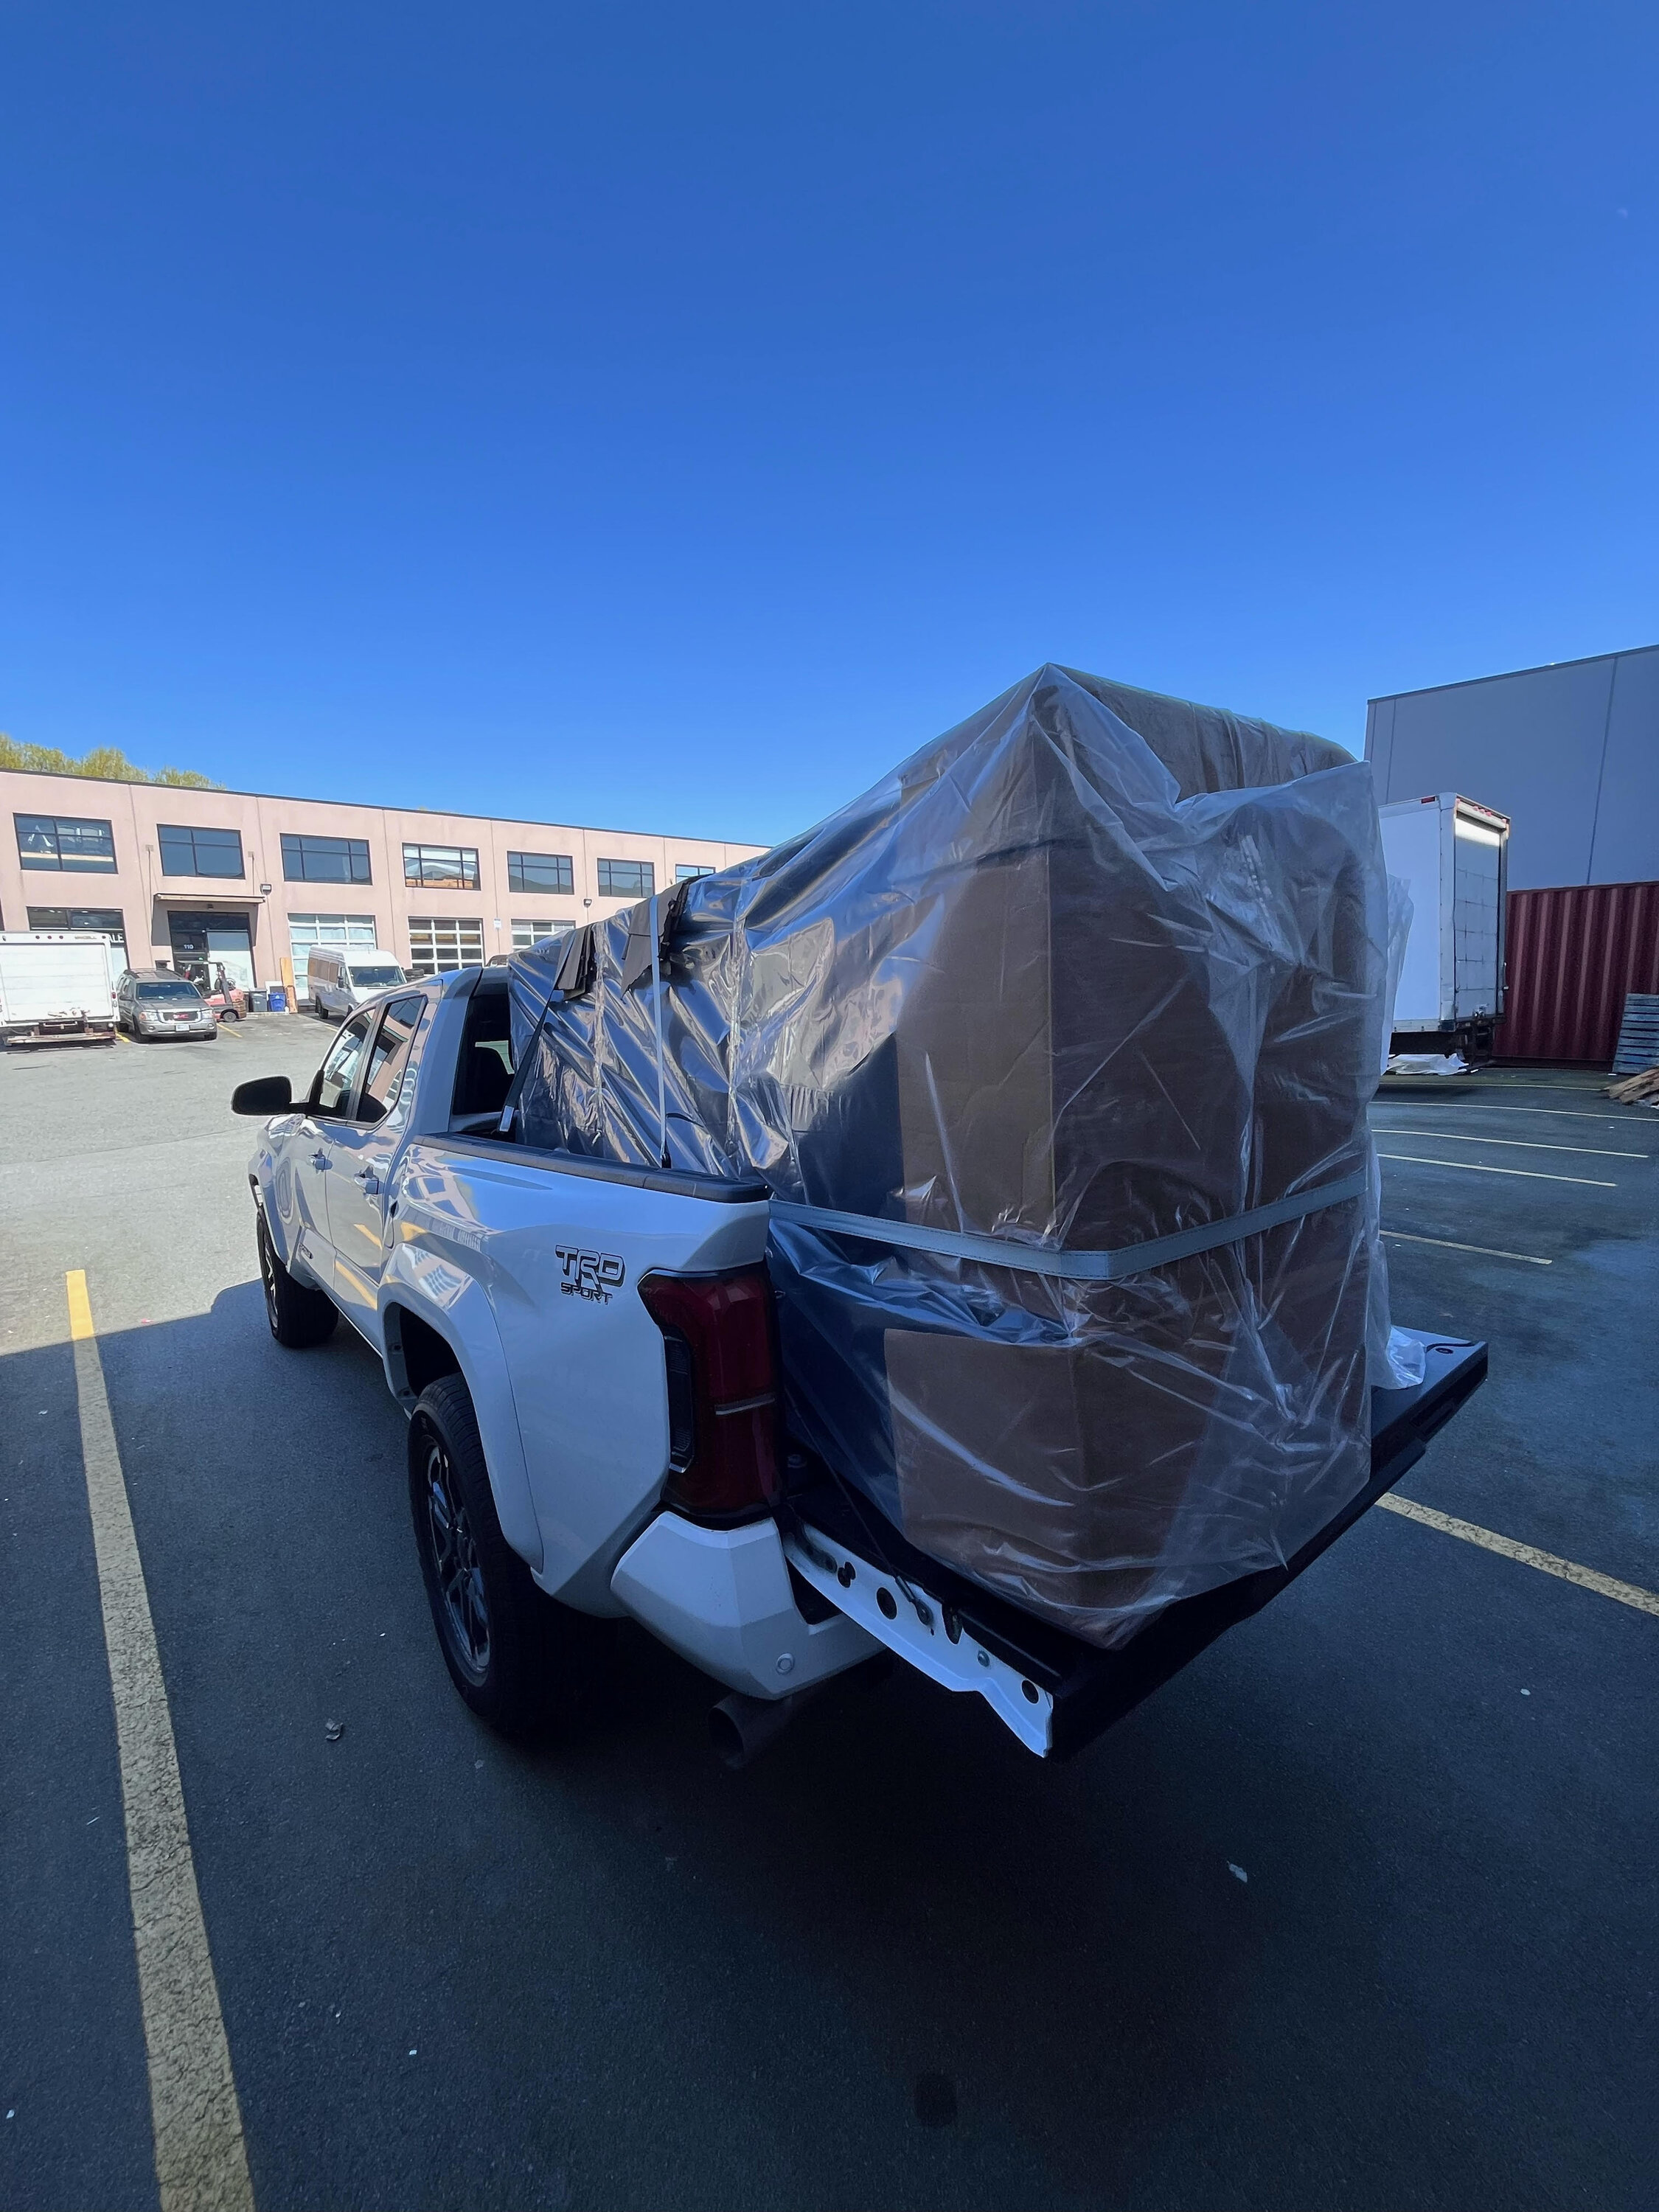 2024 Tacoma What have you hauled? Post em up! 🏋🏻‍♀️ Tacoma Hauling 2